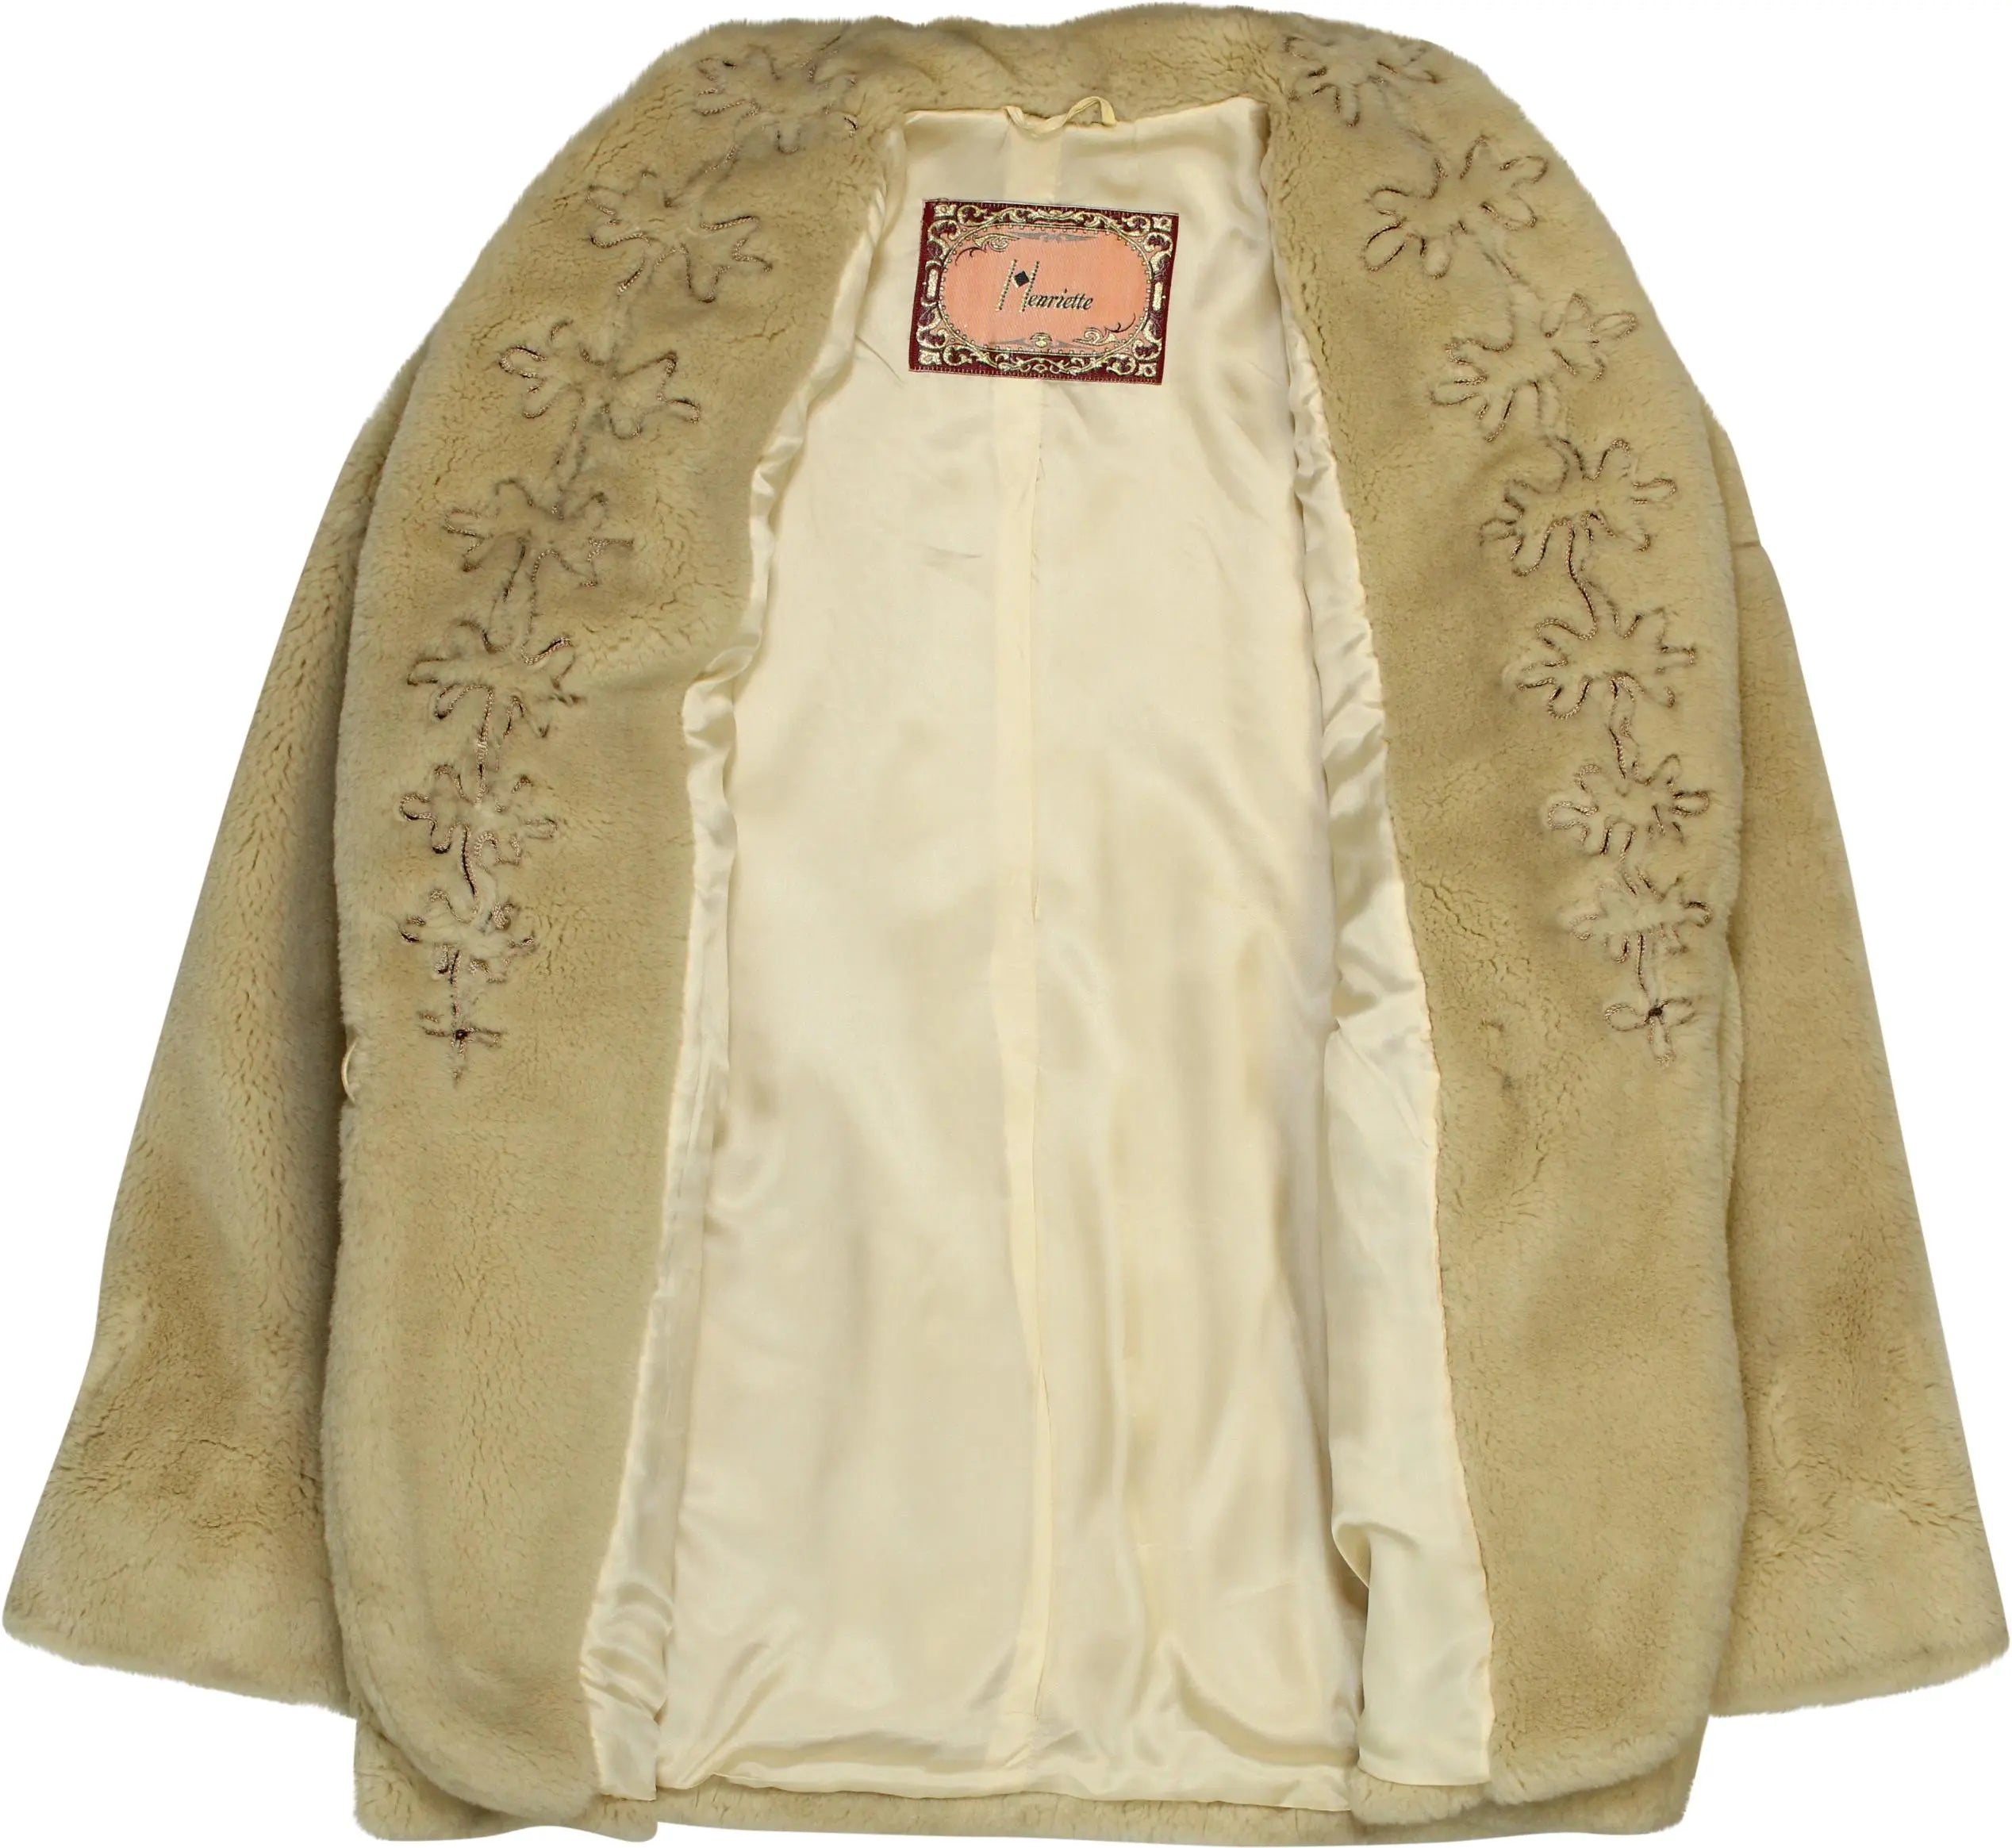 Henriette - Vintage Faux Fur Coat- ThriftTale.com - Vintage and second handclothing